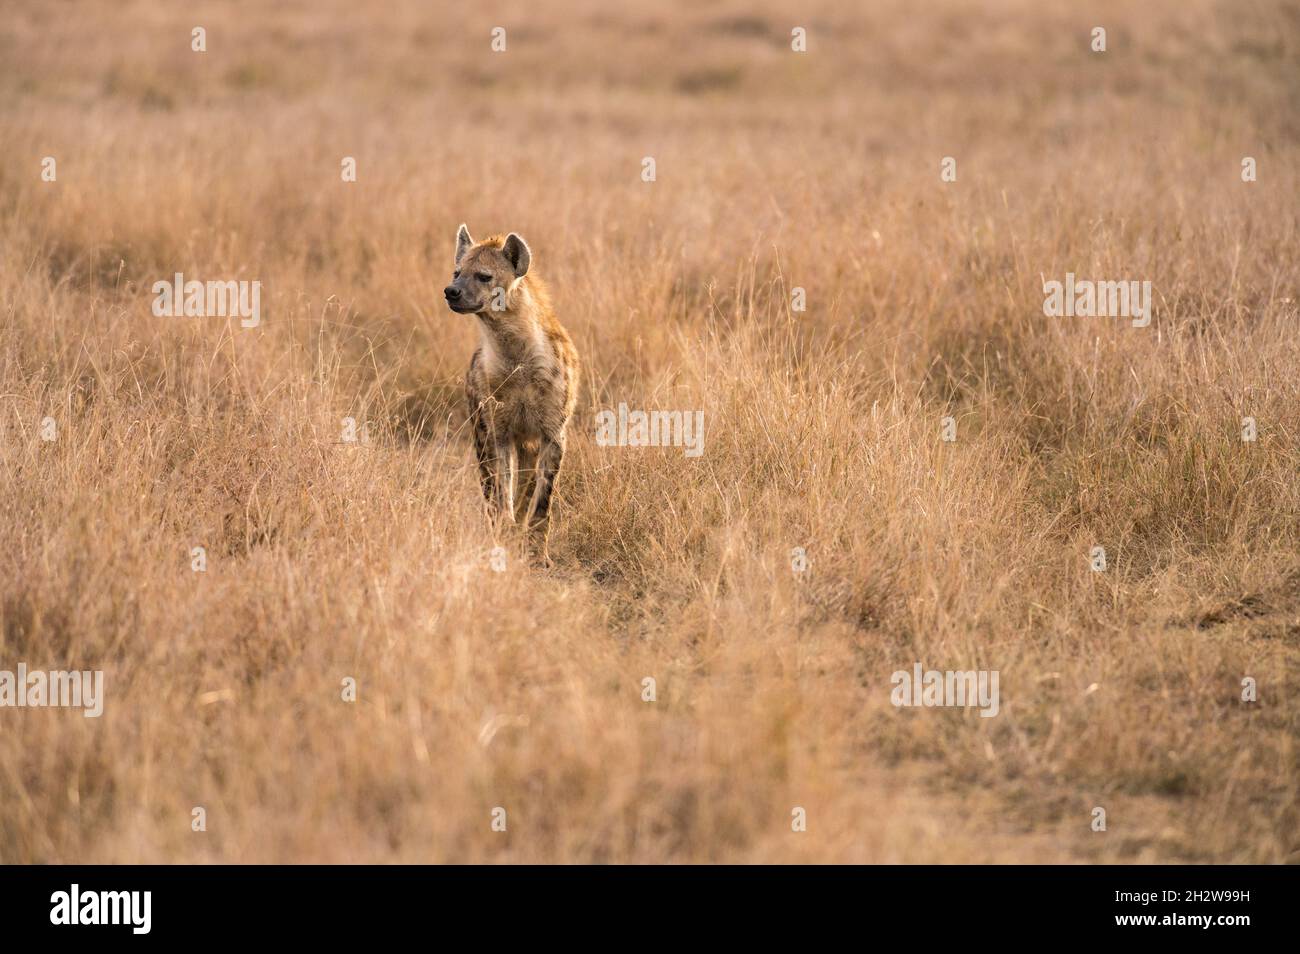 Spotted Hyena (Hyaenidae) standing in tall grass, Maasai Mara, Kenya Stock Photo